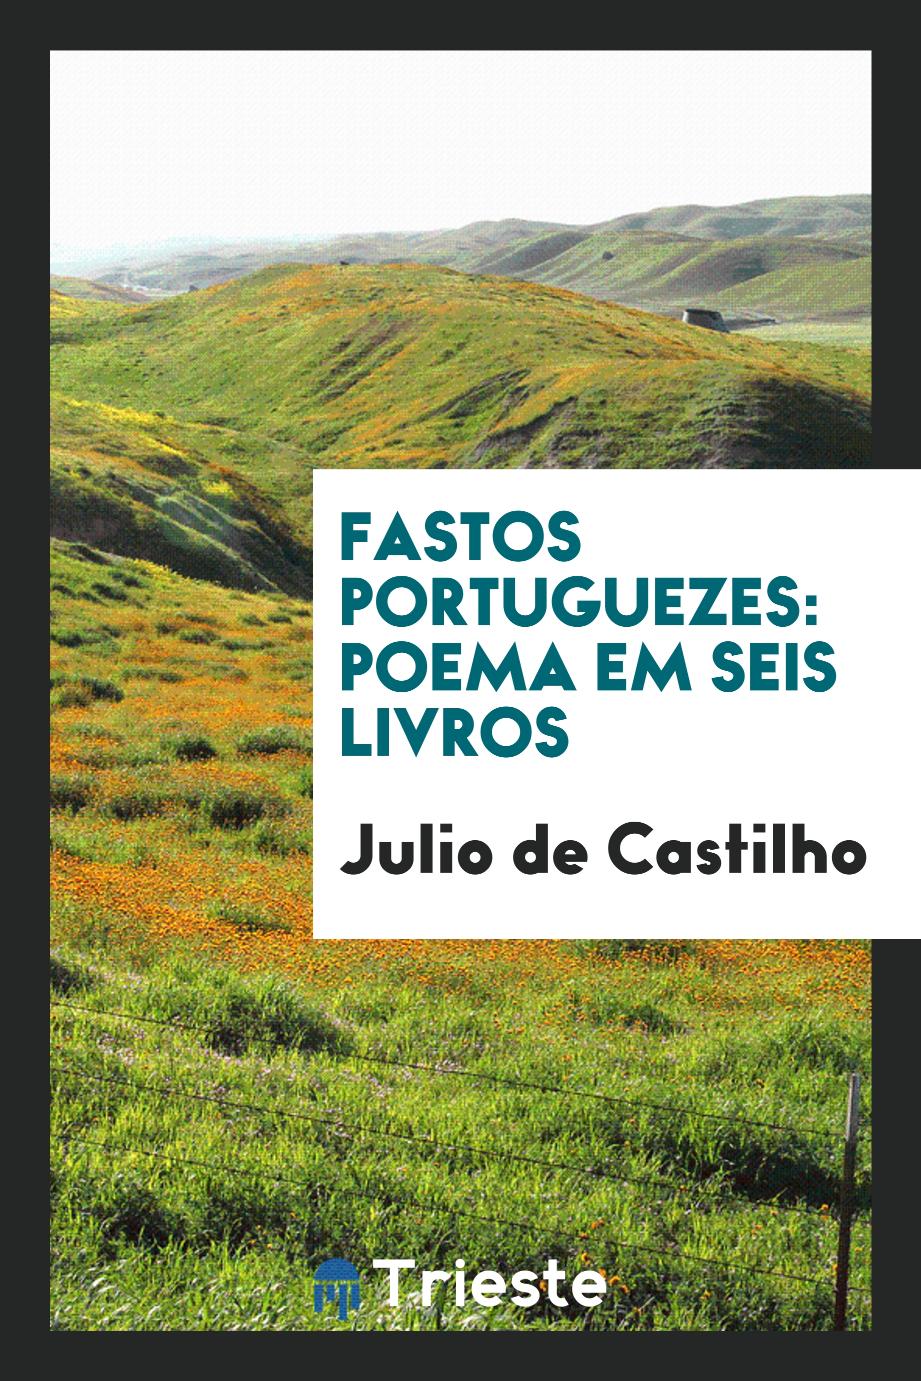 Fastos portuguezes: poema em seis livros